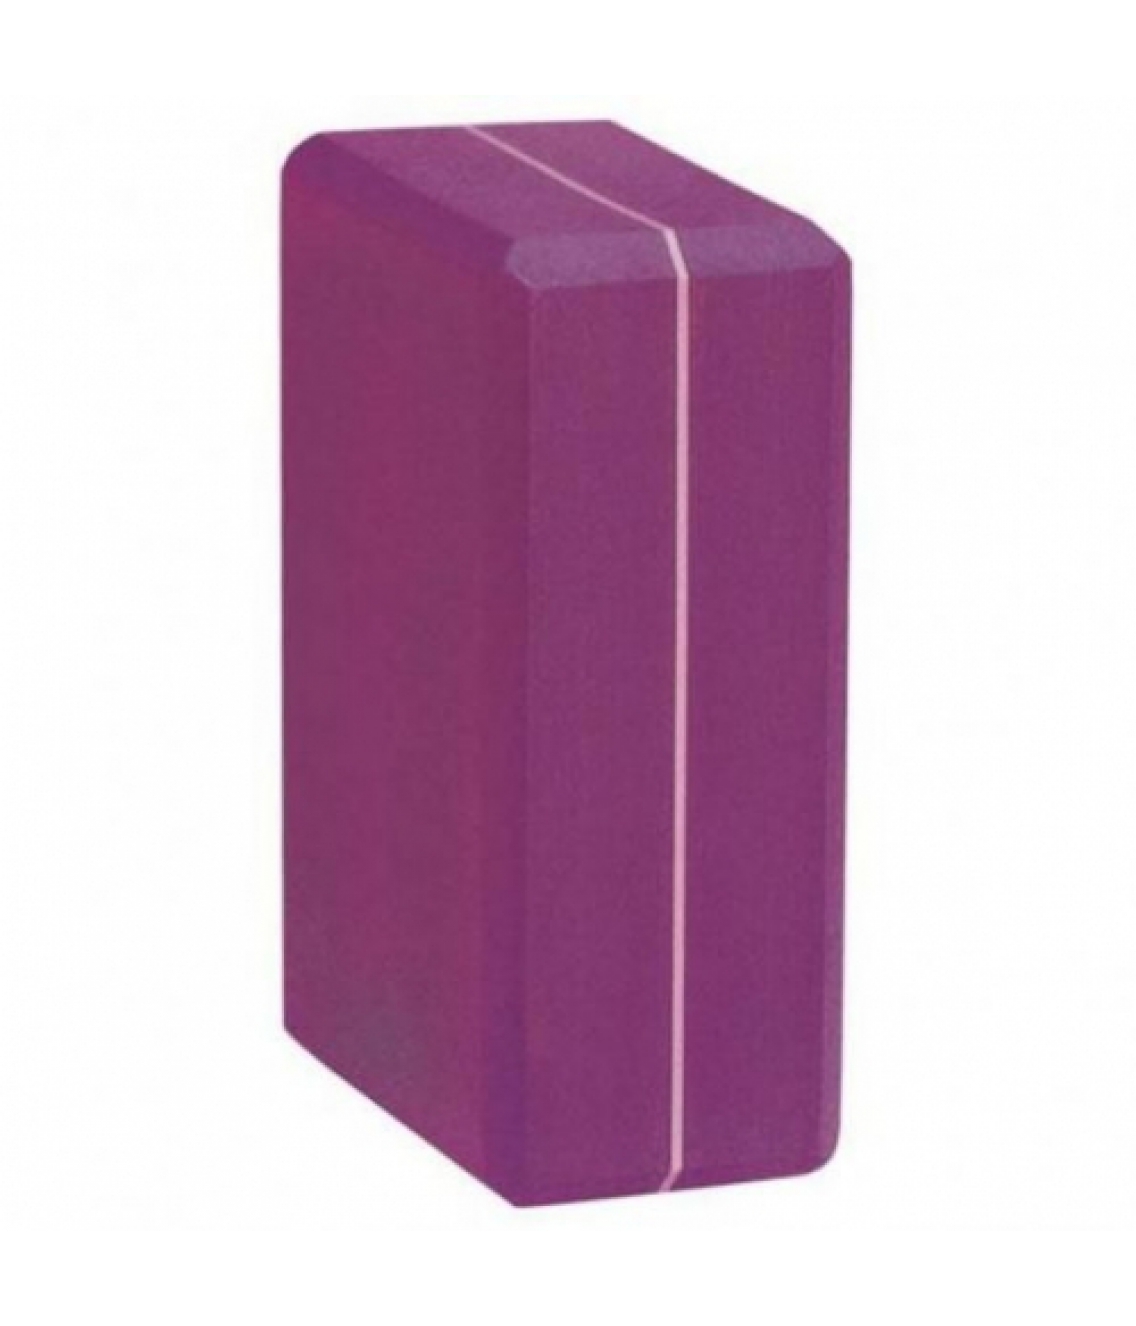 Кирпич для йоги из EVA-пены extra size фиолетовый 23см 15см 10см